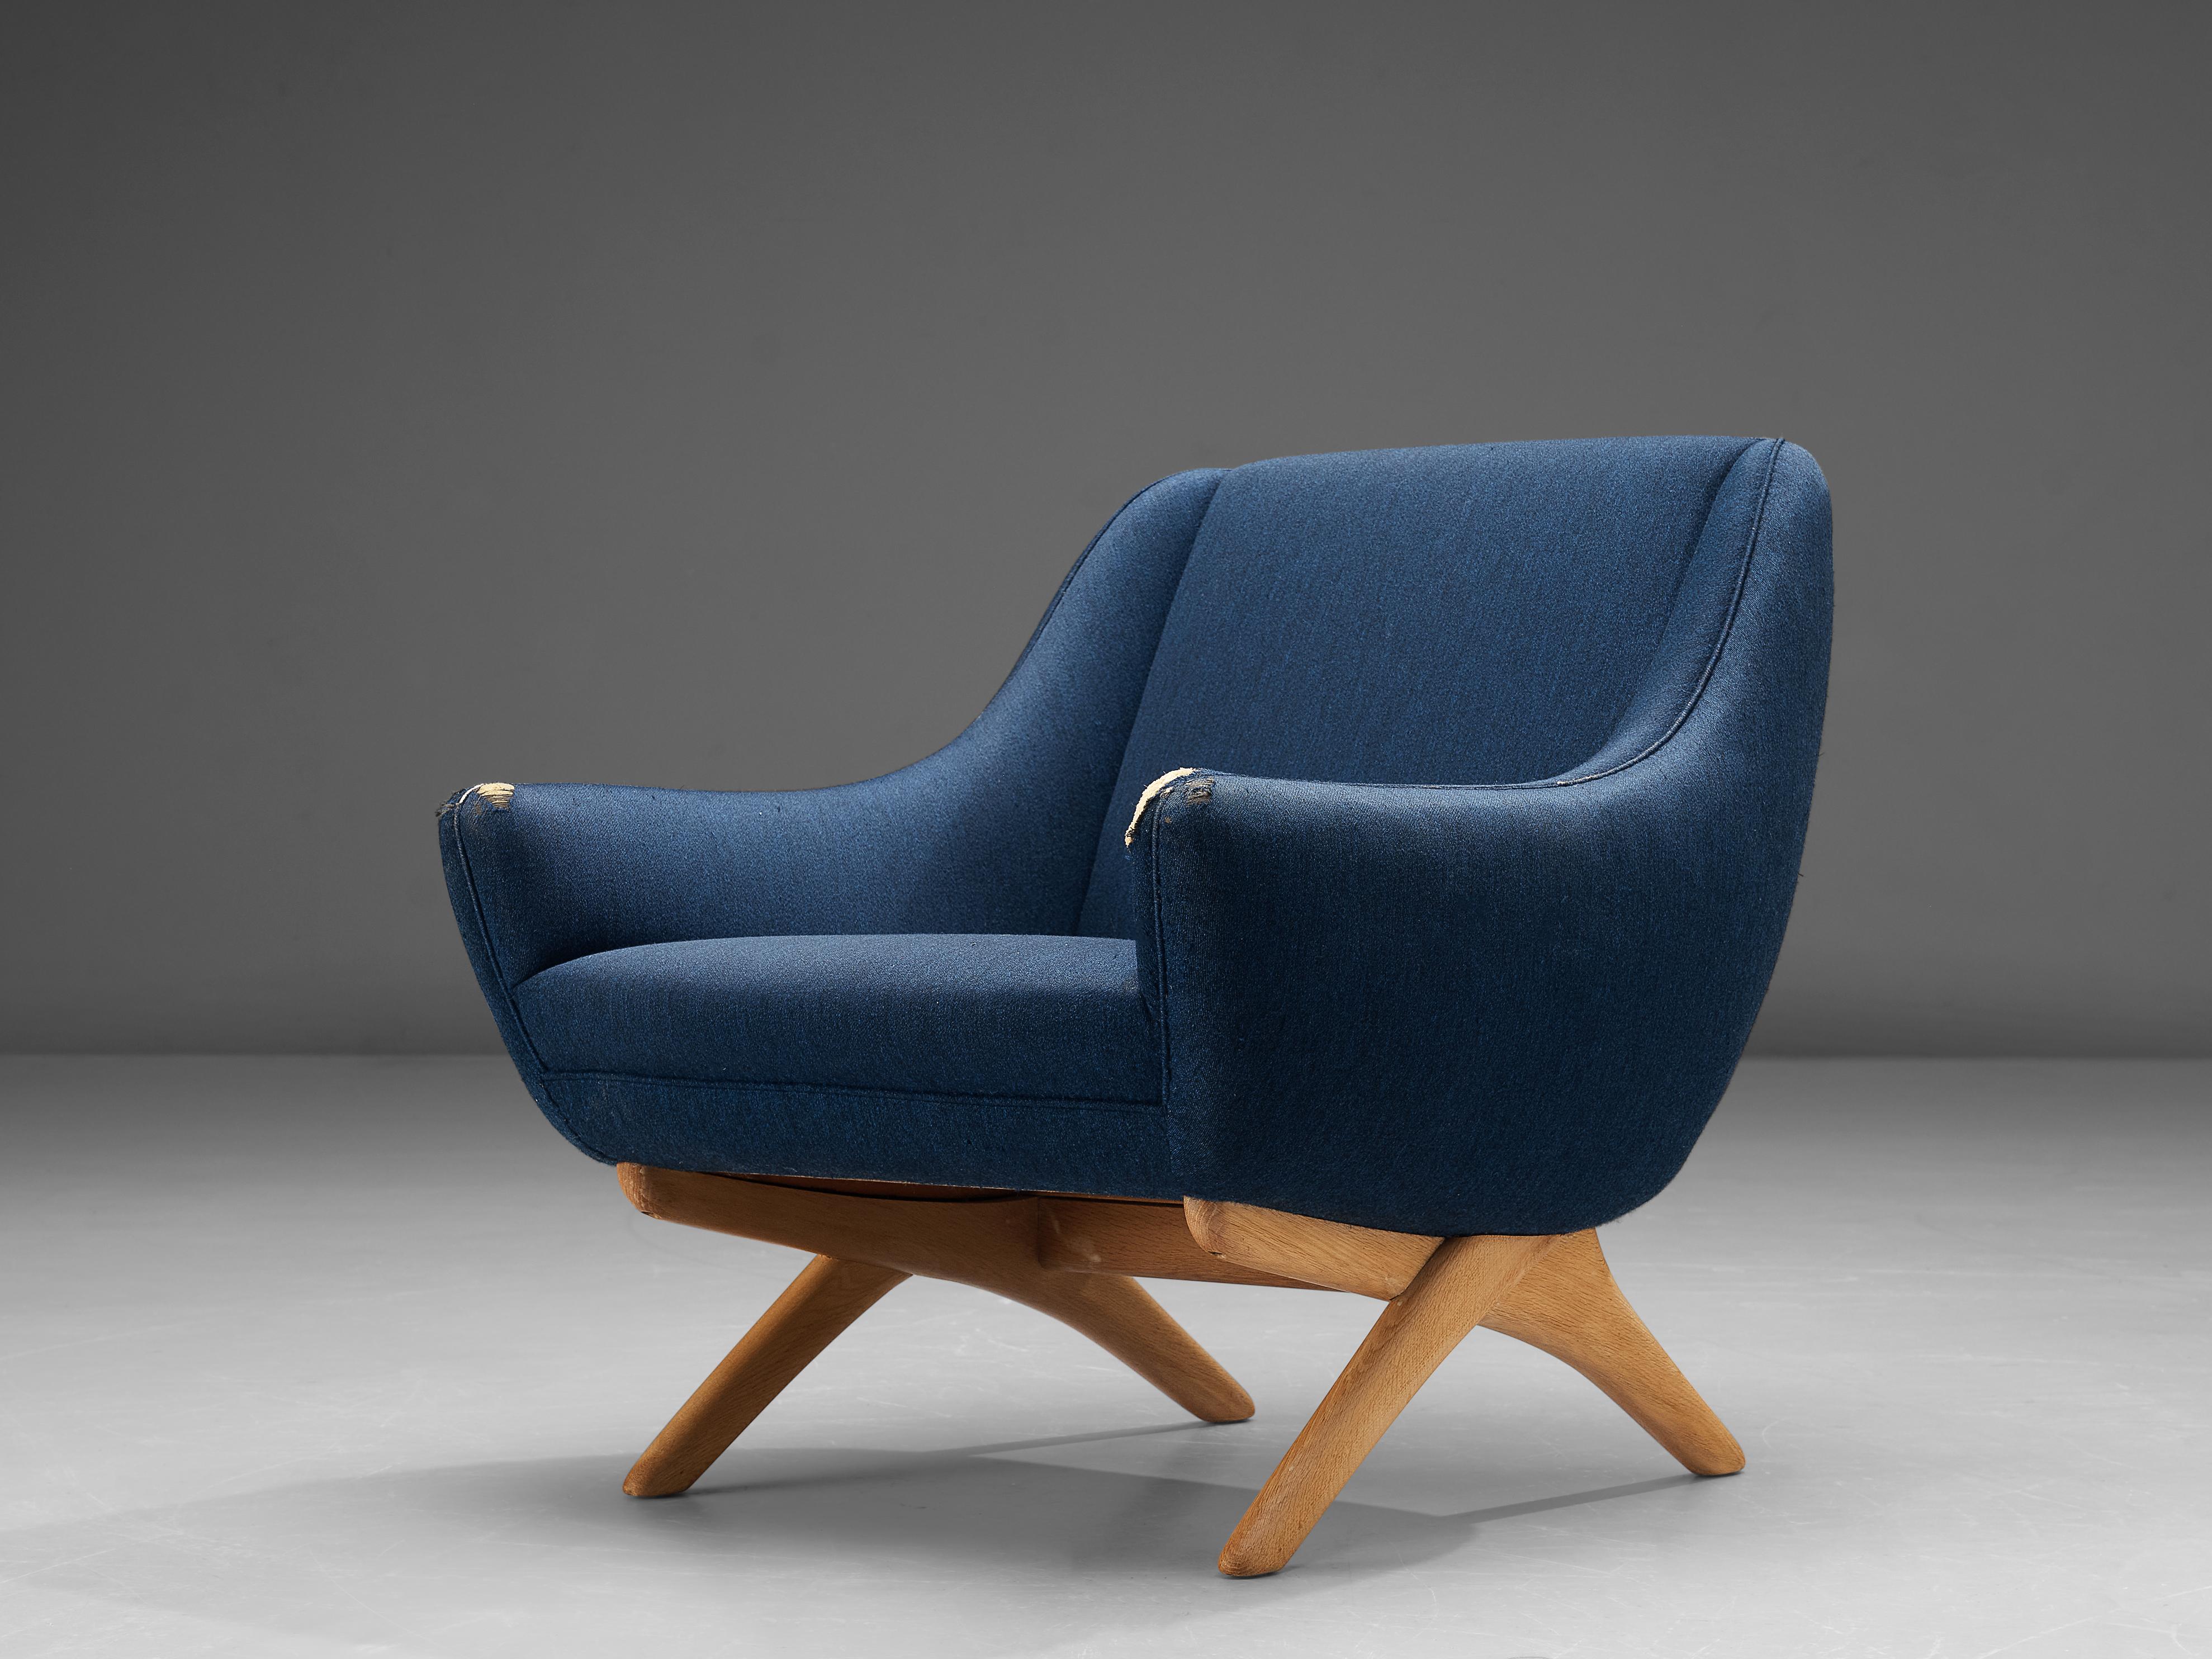 Illum Wikkelsø, Loungesessel, Stoff, Teakholz, Dänemark, 1950er Jahre

Bequemer Loungesessel des dänischen Designers Illum Wikkelsø. Die Form des Stuhls ist durch die hohe Rückenlehne gekennzeichnet, die in die niedrigen, spitzen Armlehnen übergeht.